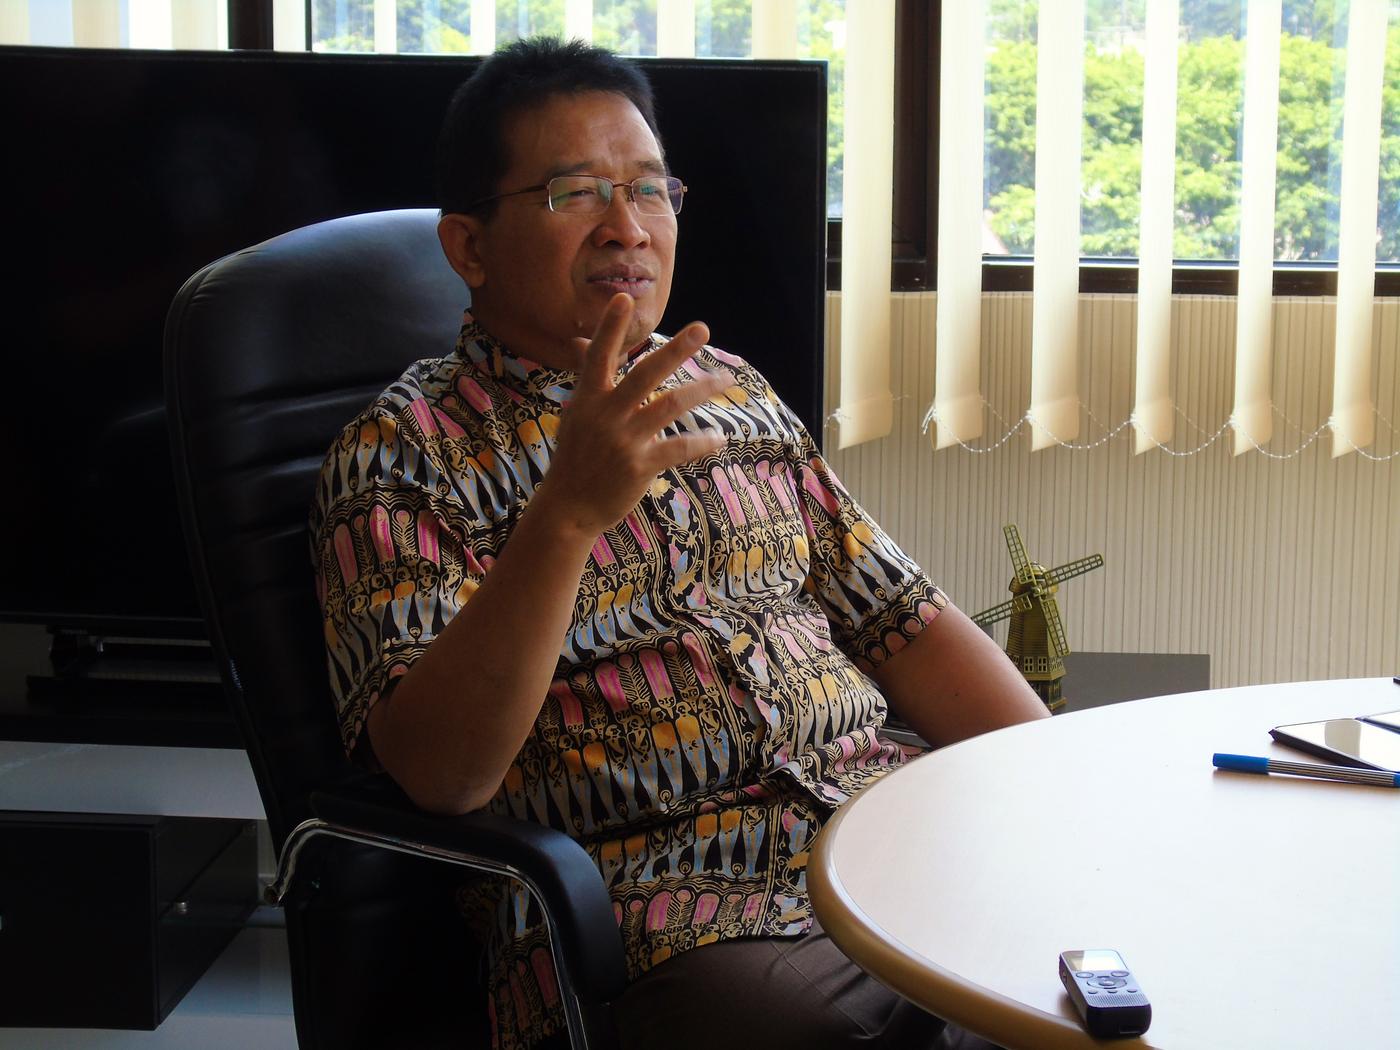 Mantan Bupati Kabupaten Bojonegoro, Bapak Suyoto atau akrab dipanggil Kang Yoto menjelaskan bahwa kebijakan yang berpijak pada kebutuhan masyarakat yang terlihat akan lebih bermakna bagi pemangku kepentingan daerah. Foto : Tim Melayani/Yayasan BaKTI